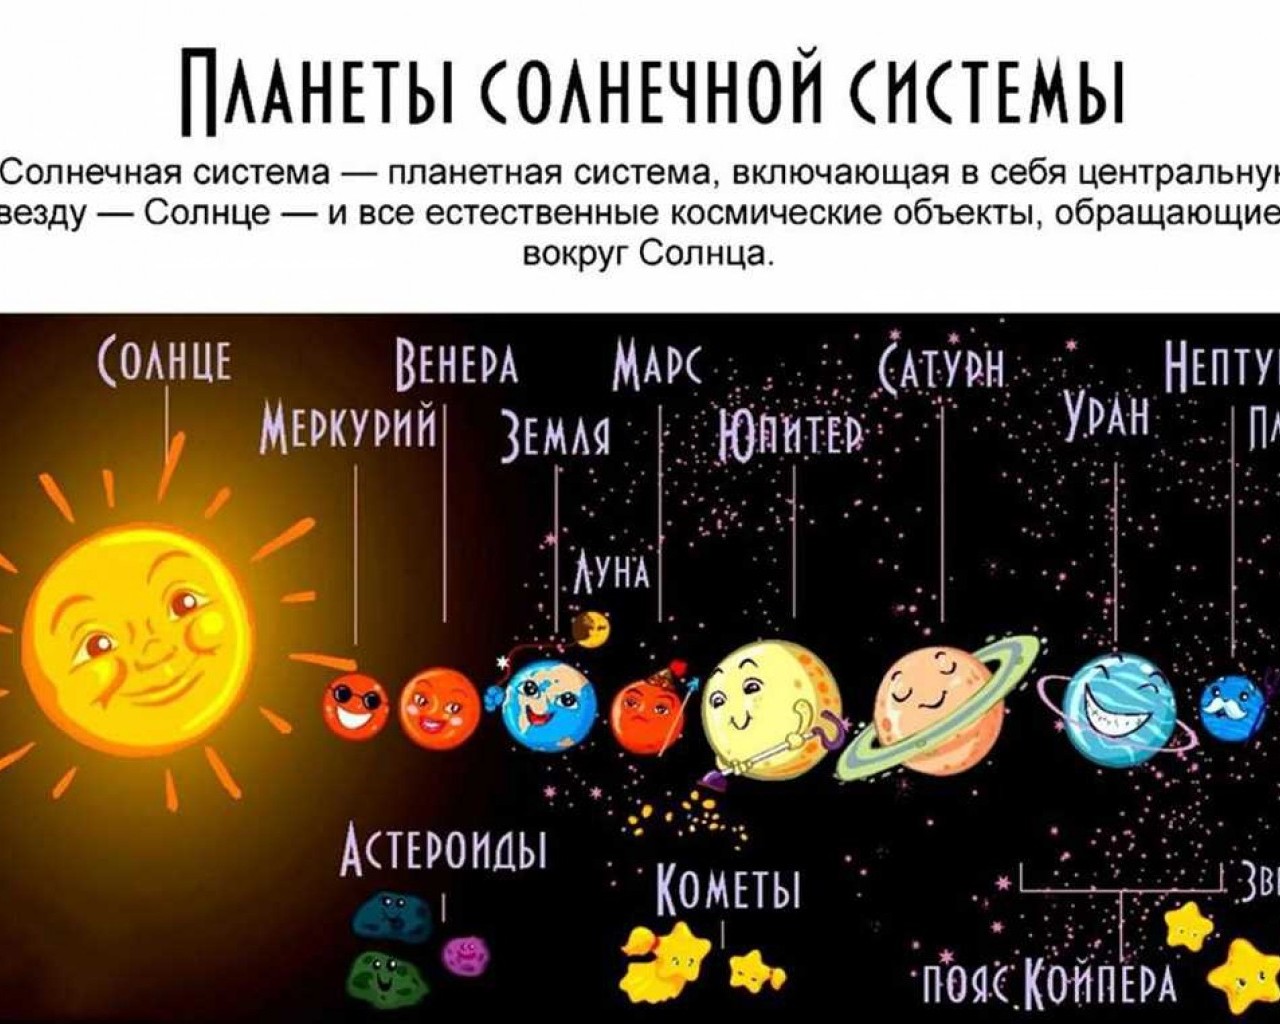 Пояса планет солнечной системы. Солнечная система с названиями планет. Солнечная система с названиями планет для детей. Девять планет солнечной системы. Солнечная система с названиями планет по порядку от солнца для детей.